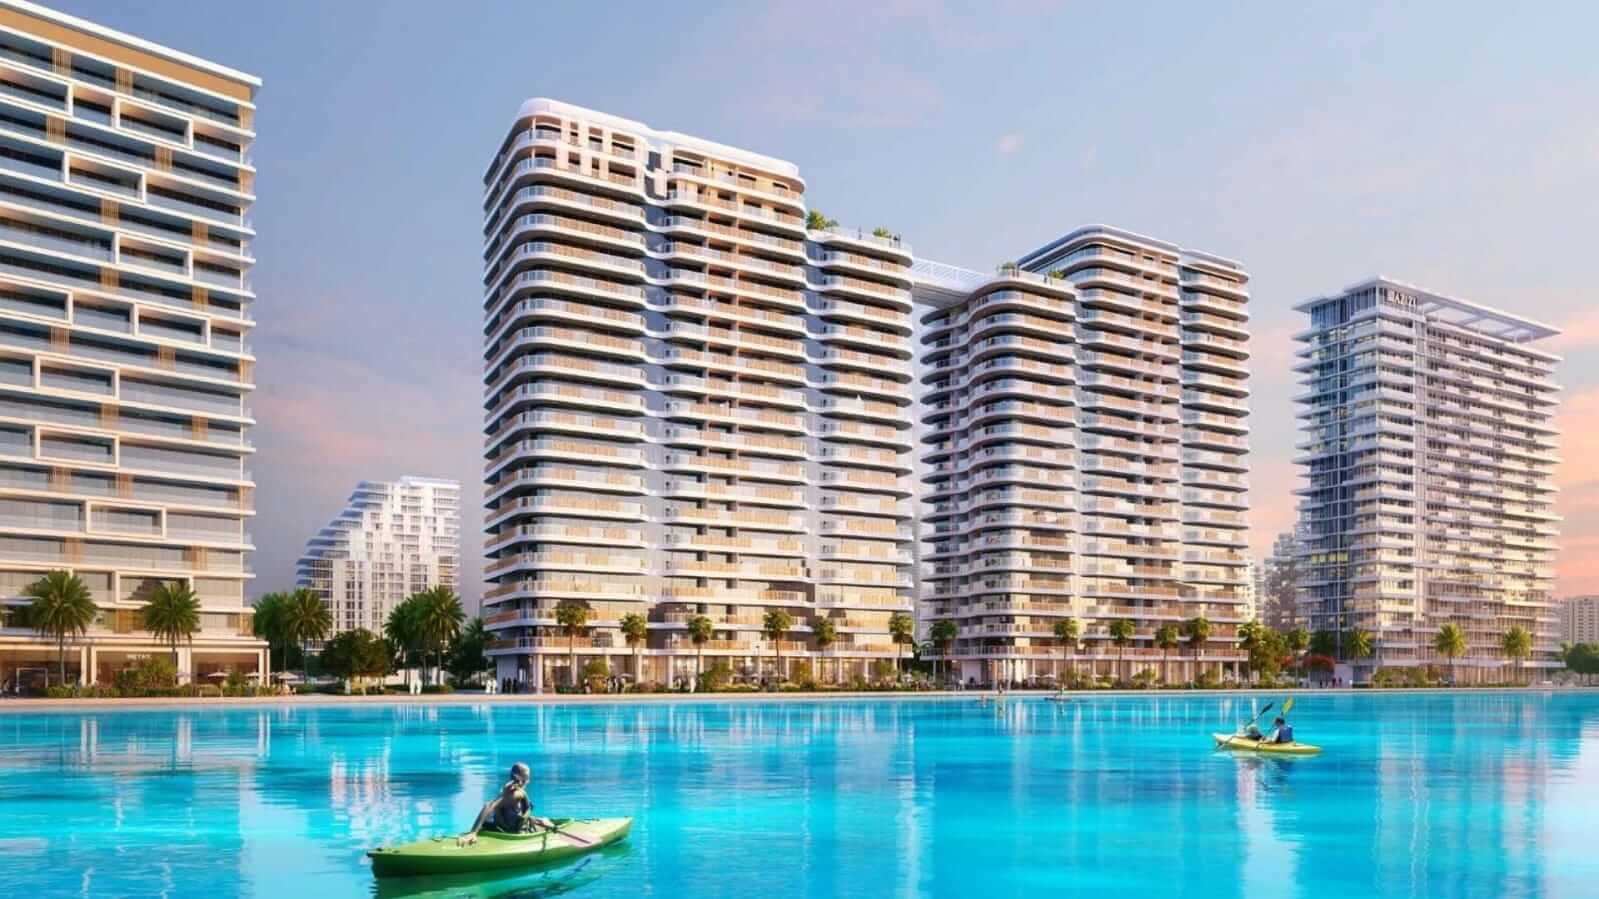 للبيع شقق غرفتين في منطقه دبي للجنوب| For sale 2-bedroom apartments in Dubai